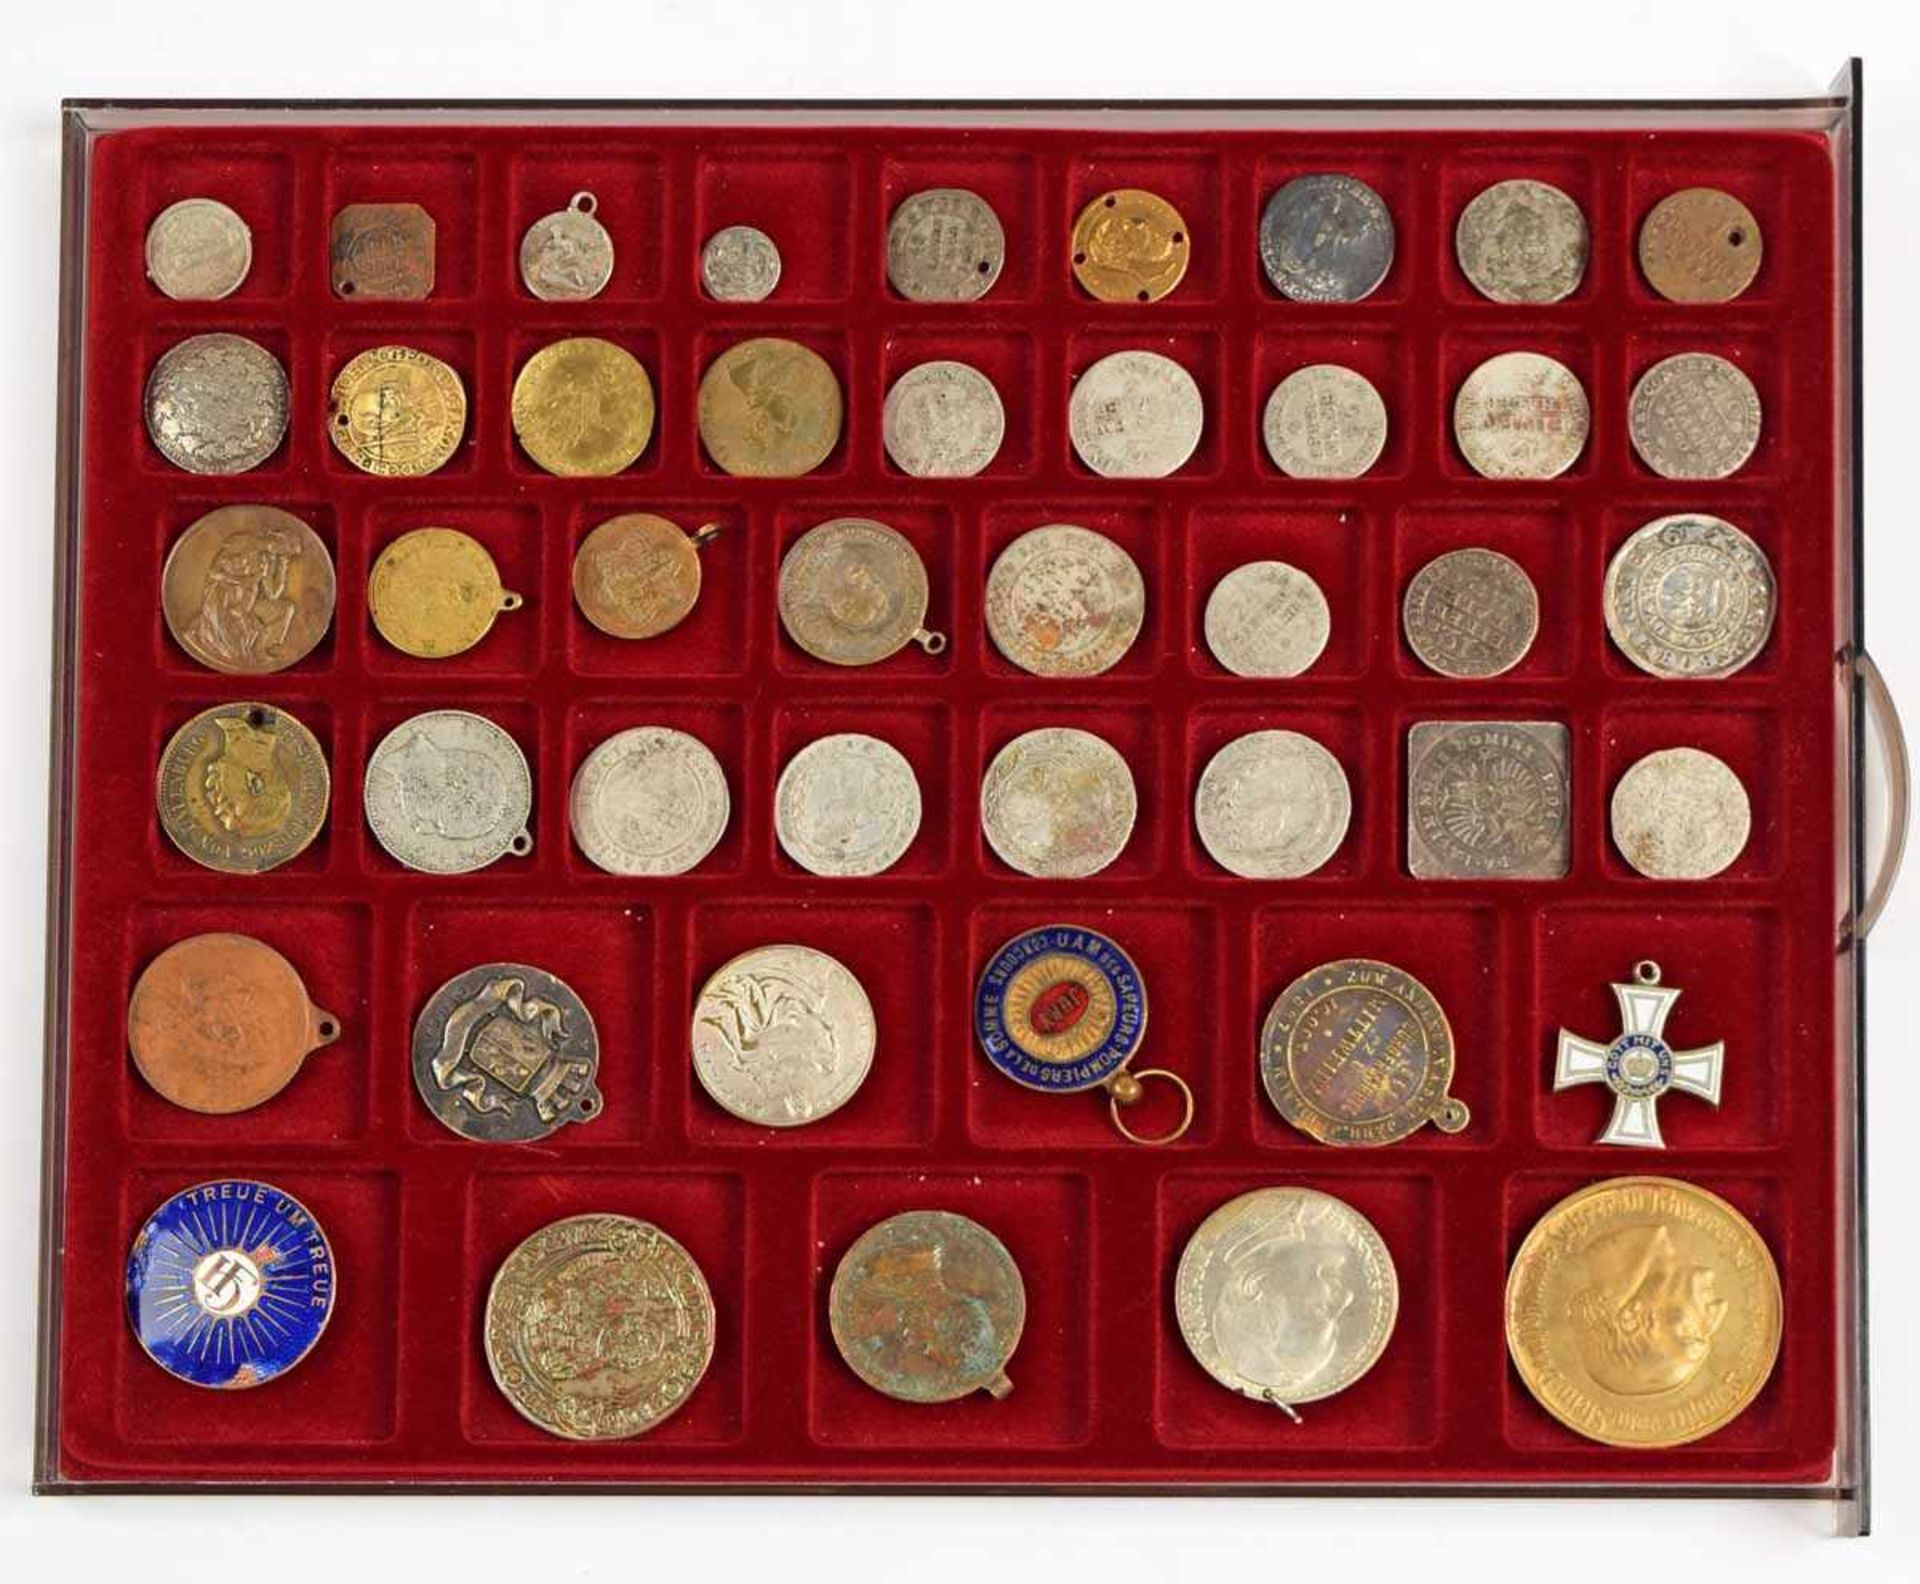 Konvolut Münzen und Medaillen insg. ca. 45 Münzen, Medaillen etc., dabei u.a. Taler-Teilstücke, - Bild 2 aus 2